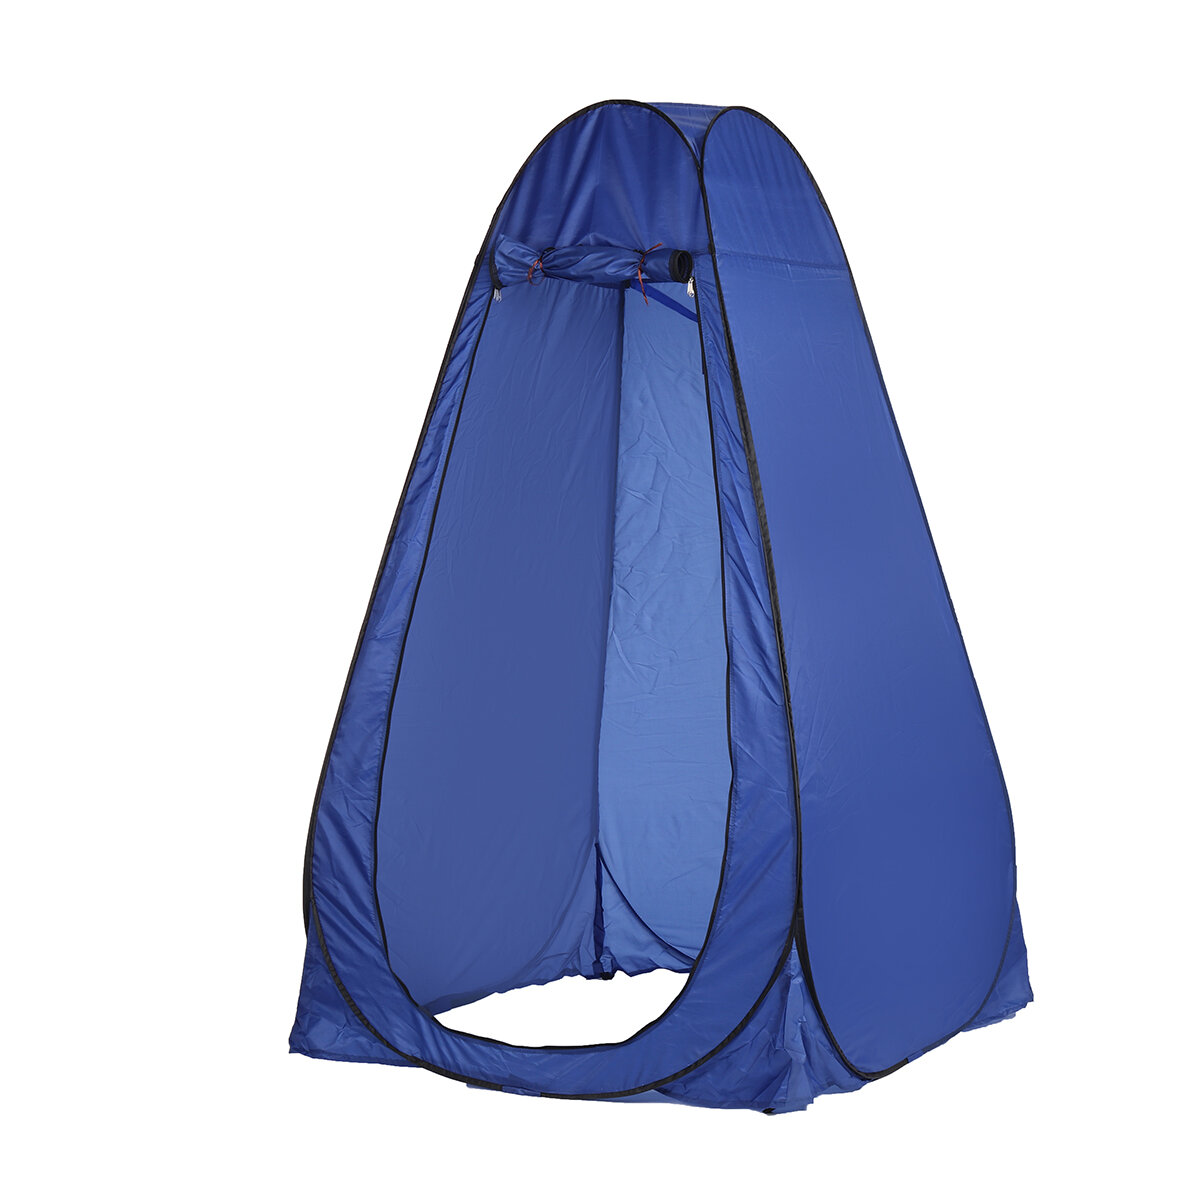 Barraca portátil pop-up para 2-3 pessoas para camping, pesca, banho, chuveiro e vestiário, com saco de armazenamento ao ar livre.